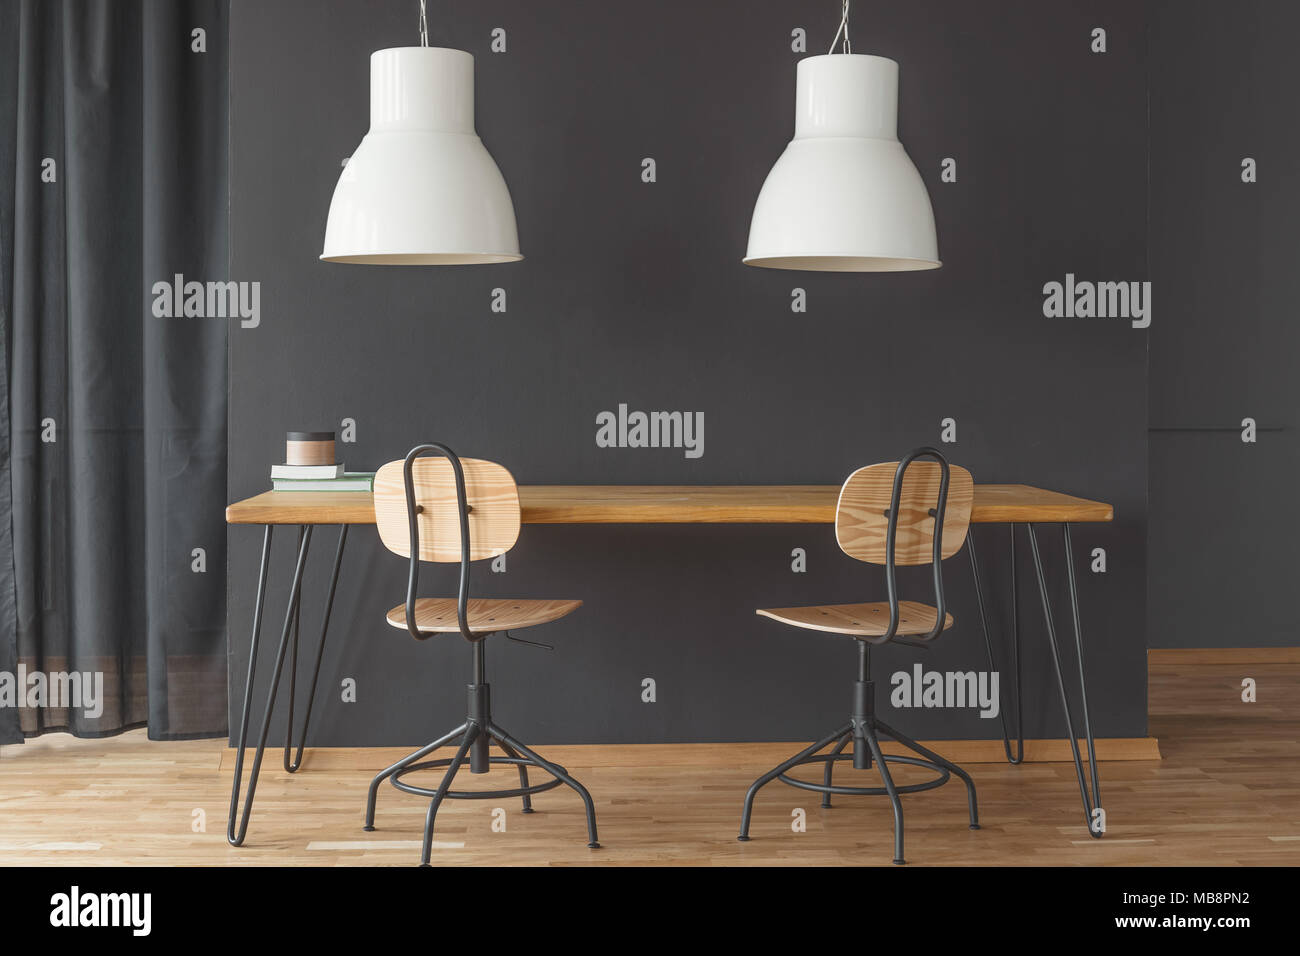 Due luci bianche appeso sopra la tabella a forcina in nero sala da pranzo interno con tenda e sedie Foto Stock